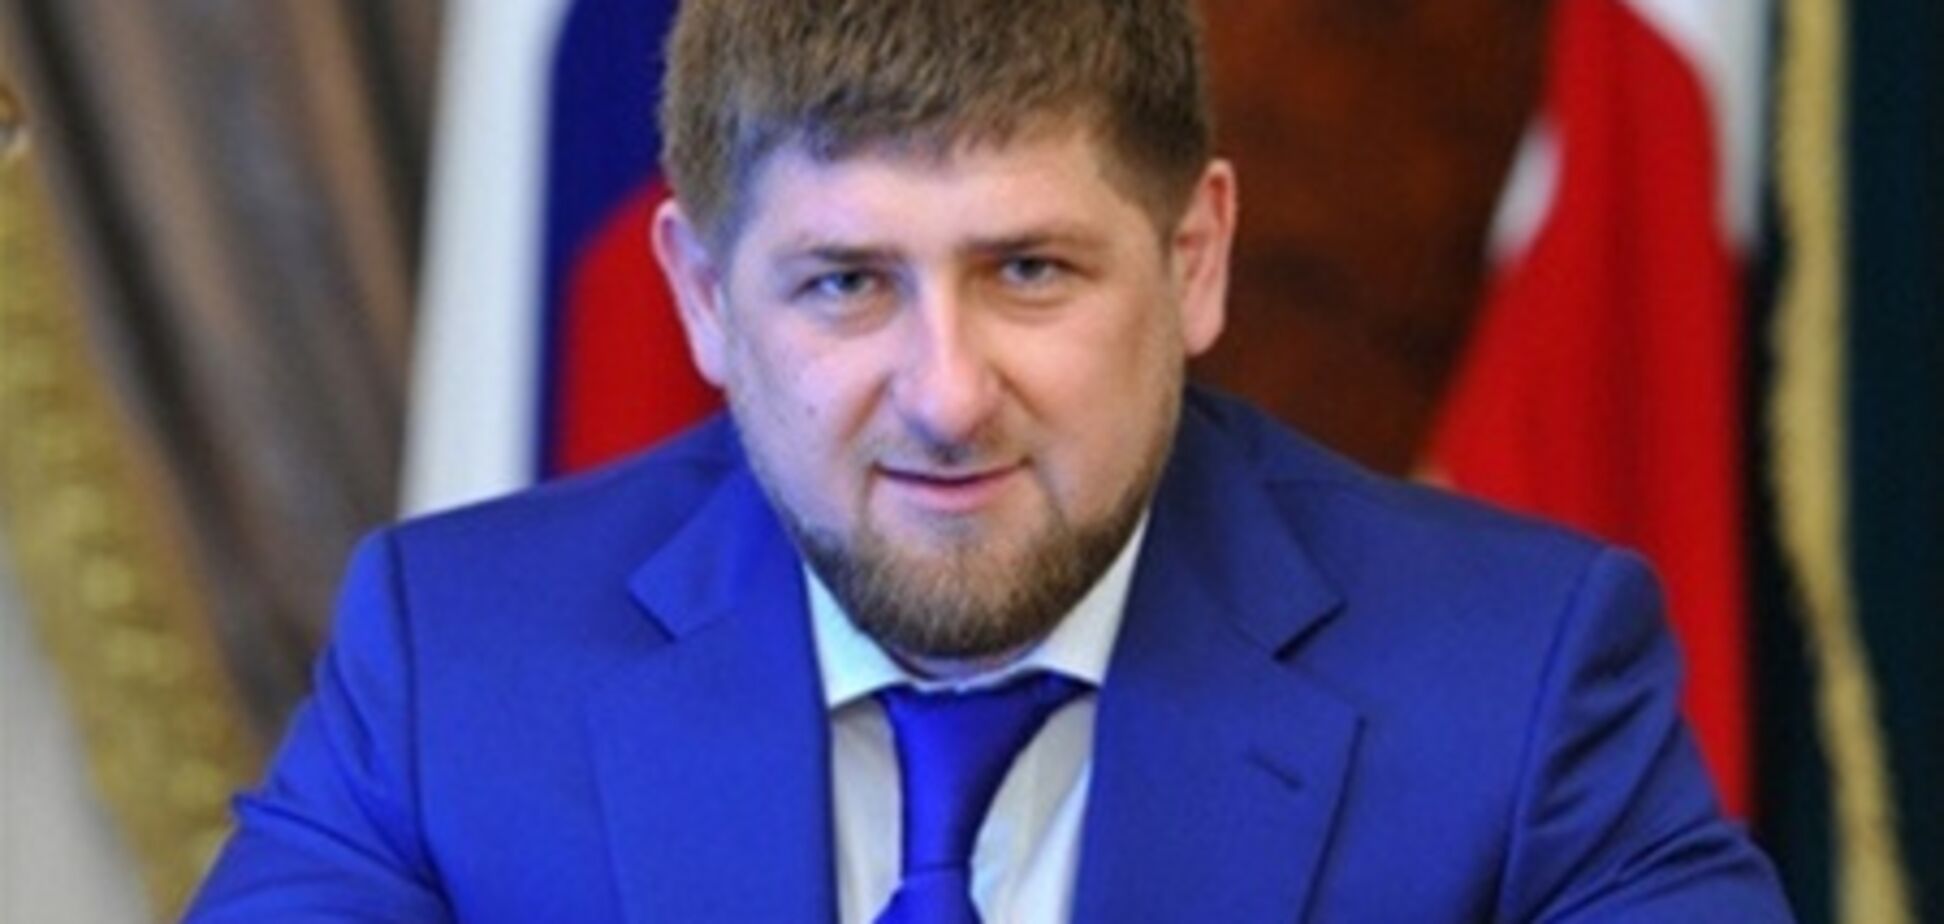 Кадыров помогает убийце болельщика бороться с коррупцией